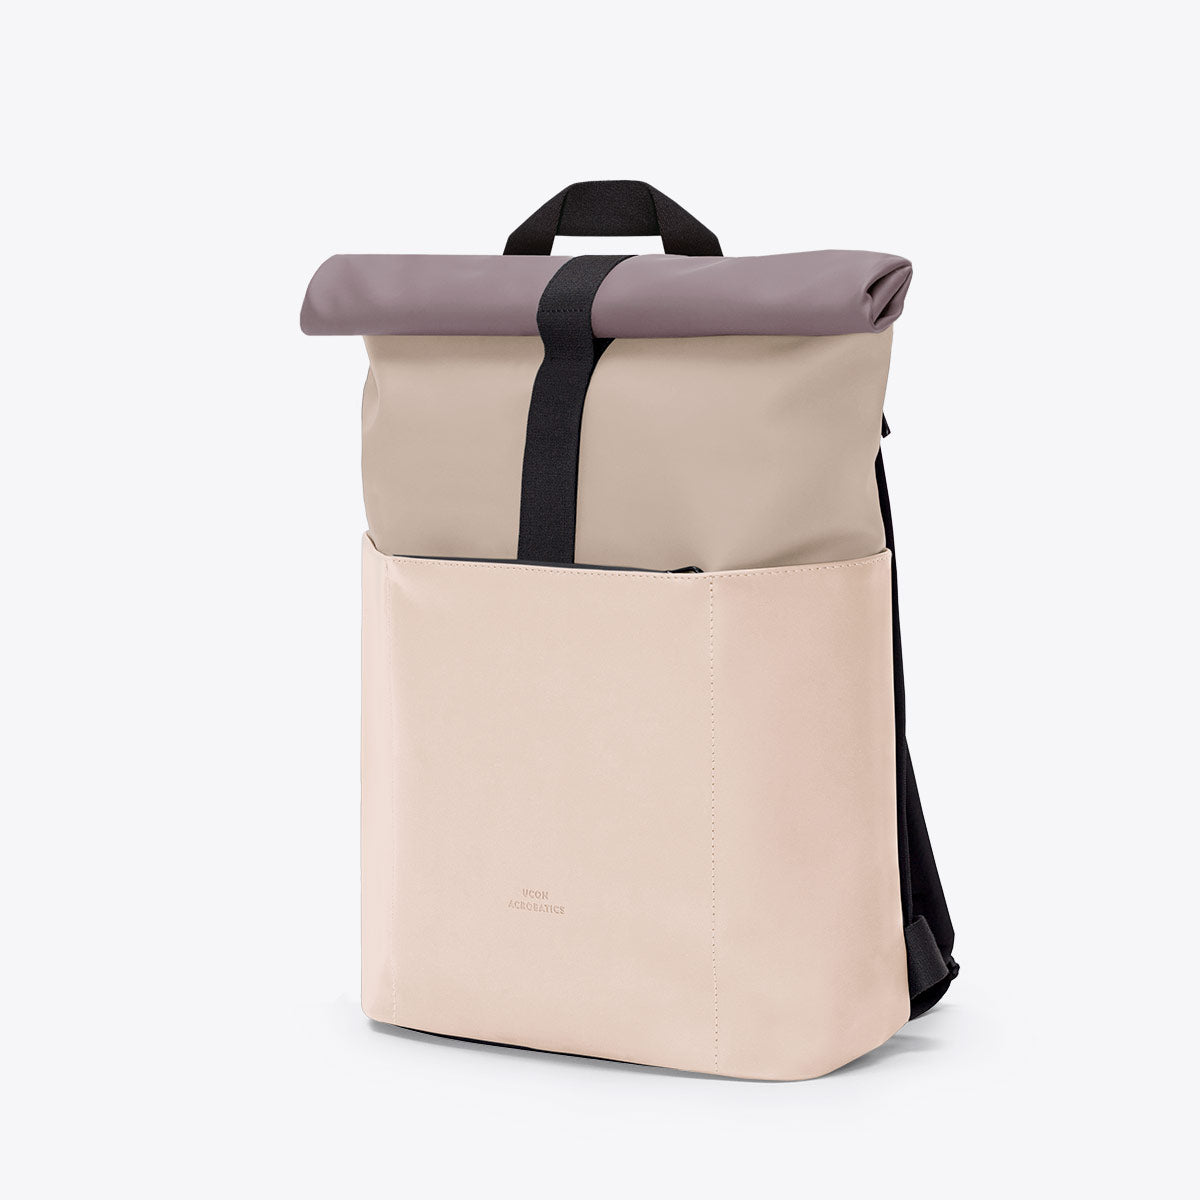 経典ブランド UCON Backpack Mini Hajo ACROBATICS リュック/バック